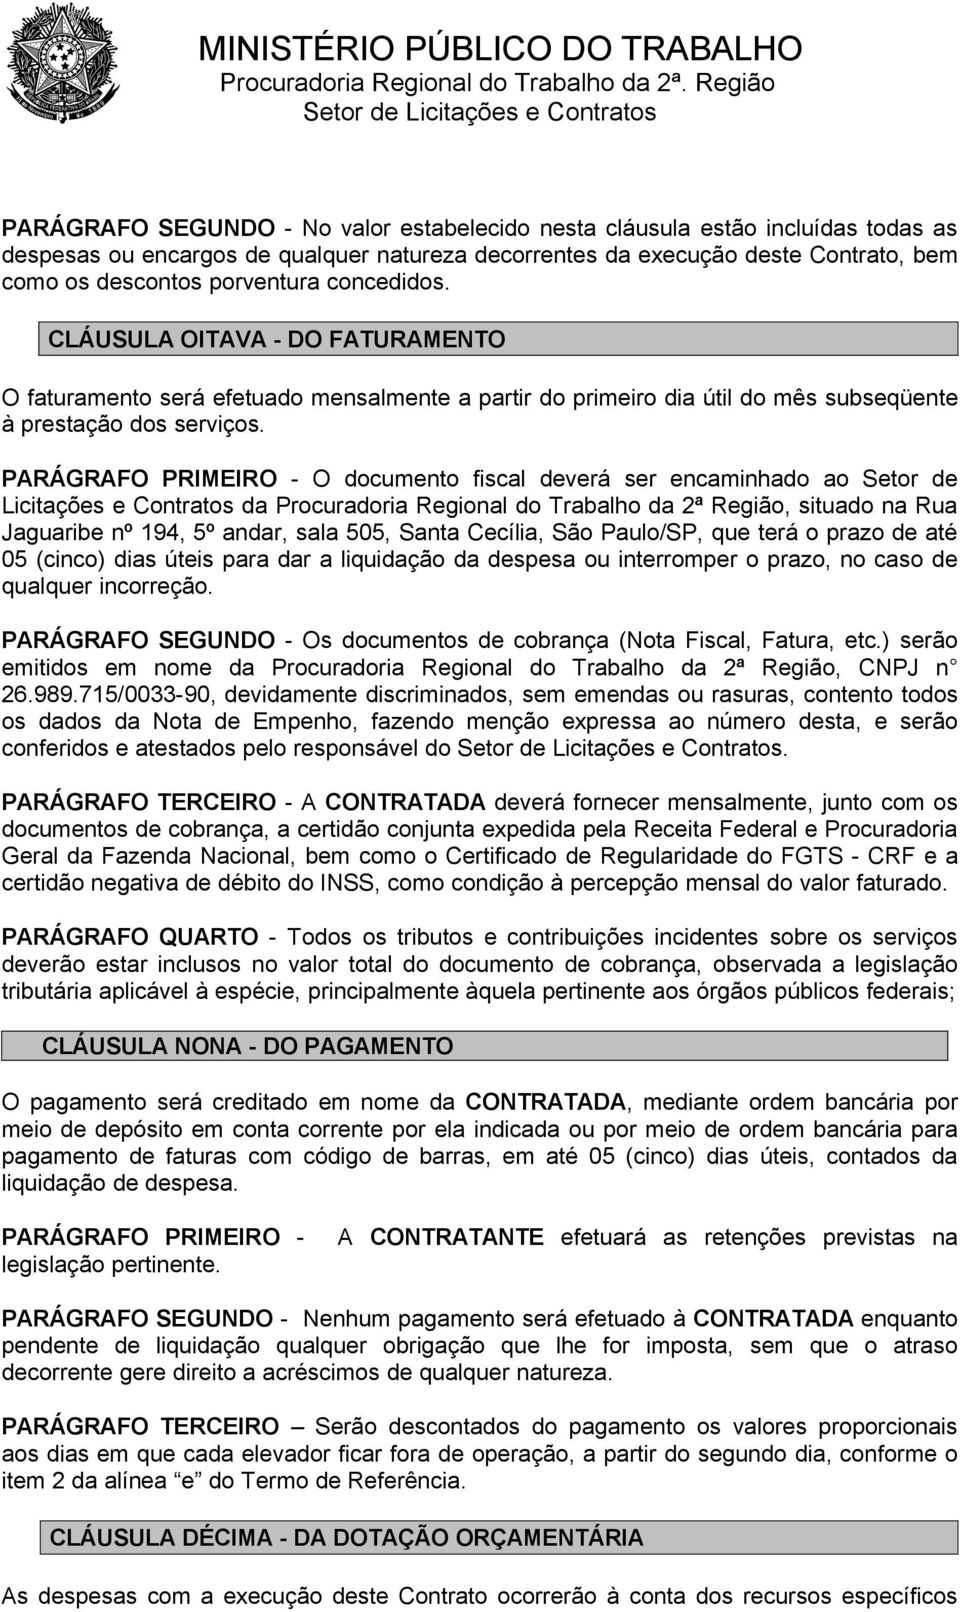 PARÁGRAFO PRIMEIRO - O documento fiscal deverá ser encaminhado ao Setor de Licitações e Contratos da Procuradoria Regional do Trabalho da 2ª Região, situado na Rua Jaguaribe nº 194, 5º andar, sala